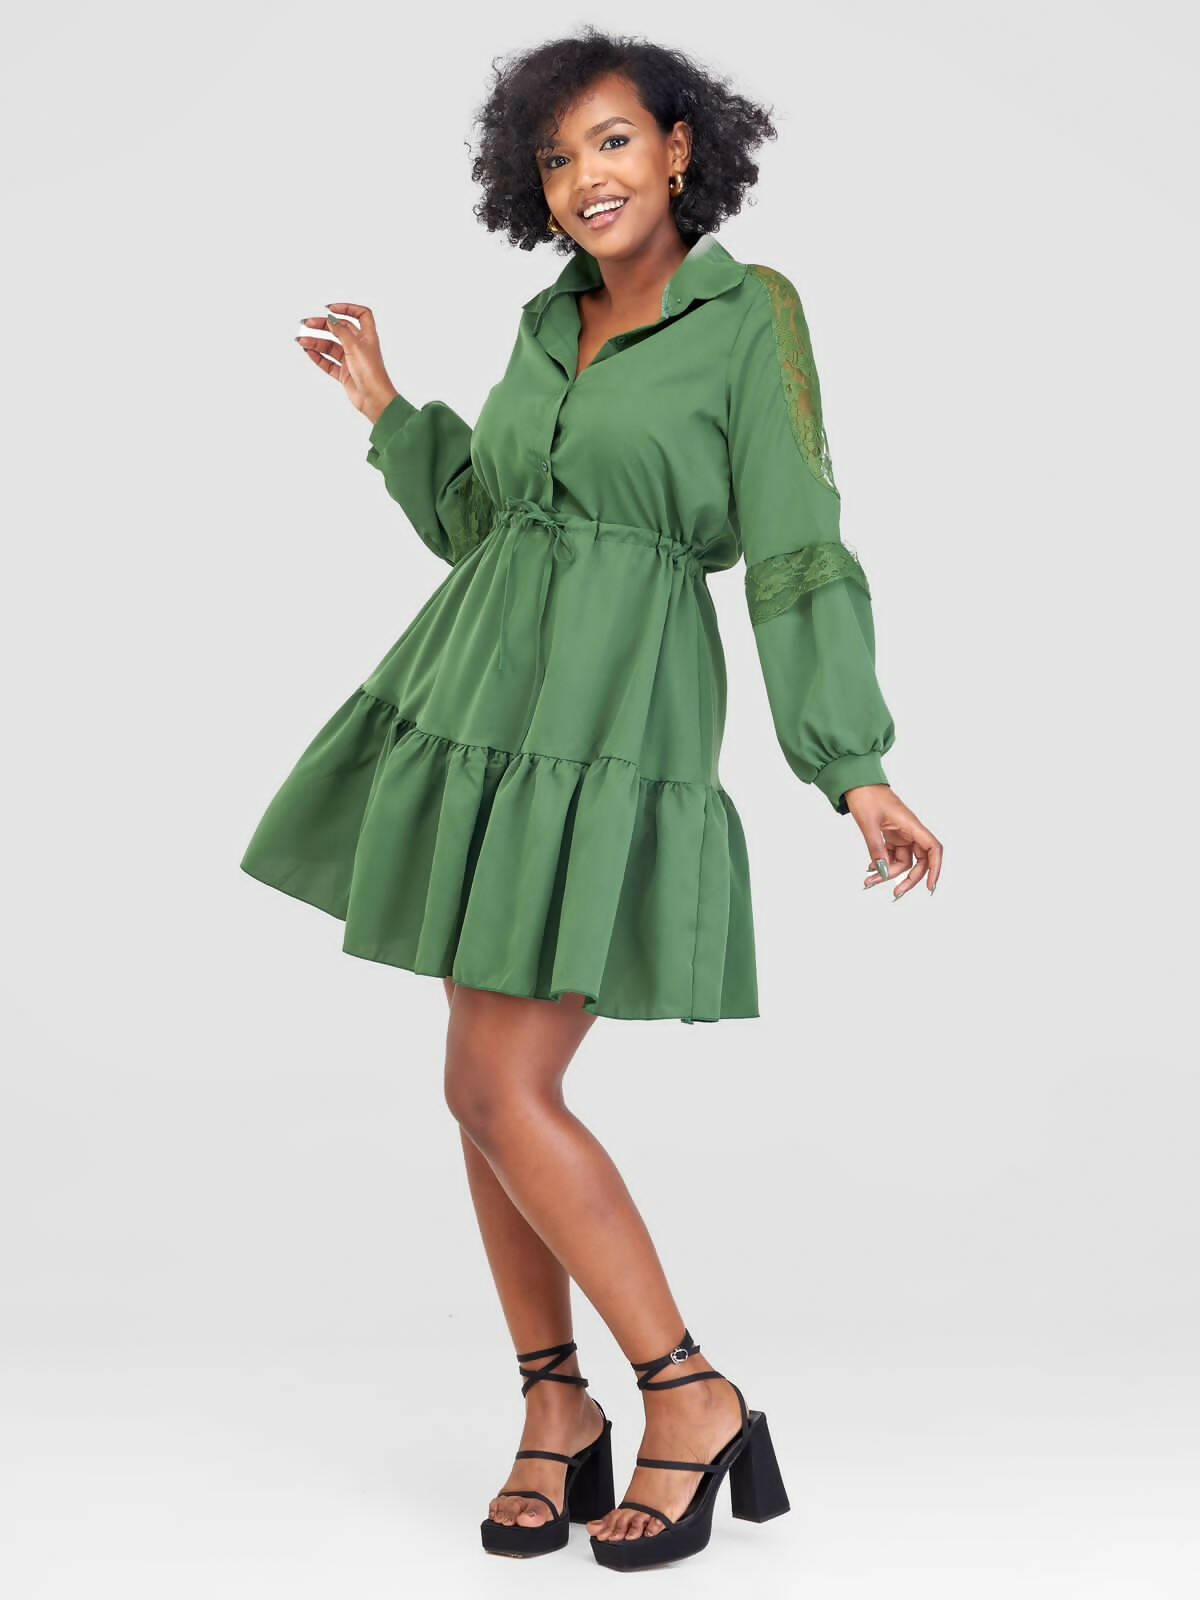 Stylish Sisters Dress - Green - Shopzetu